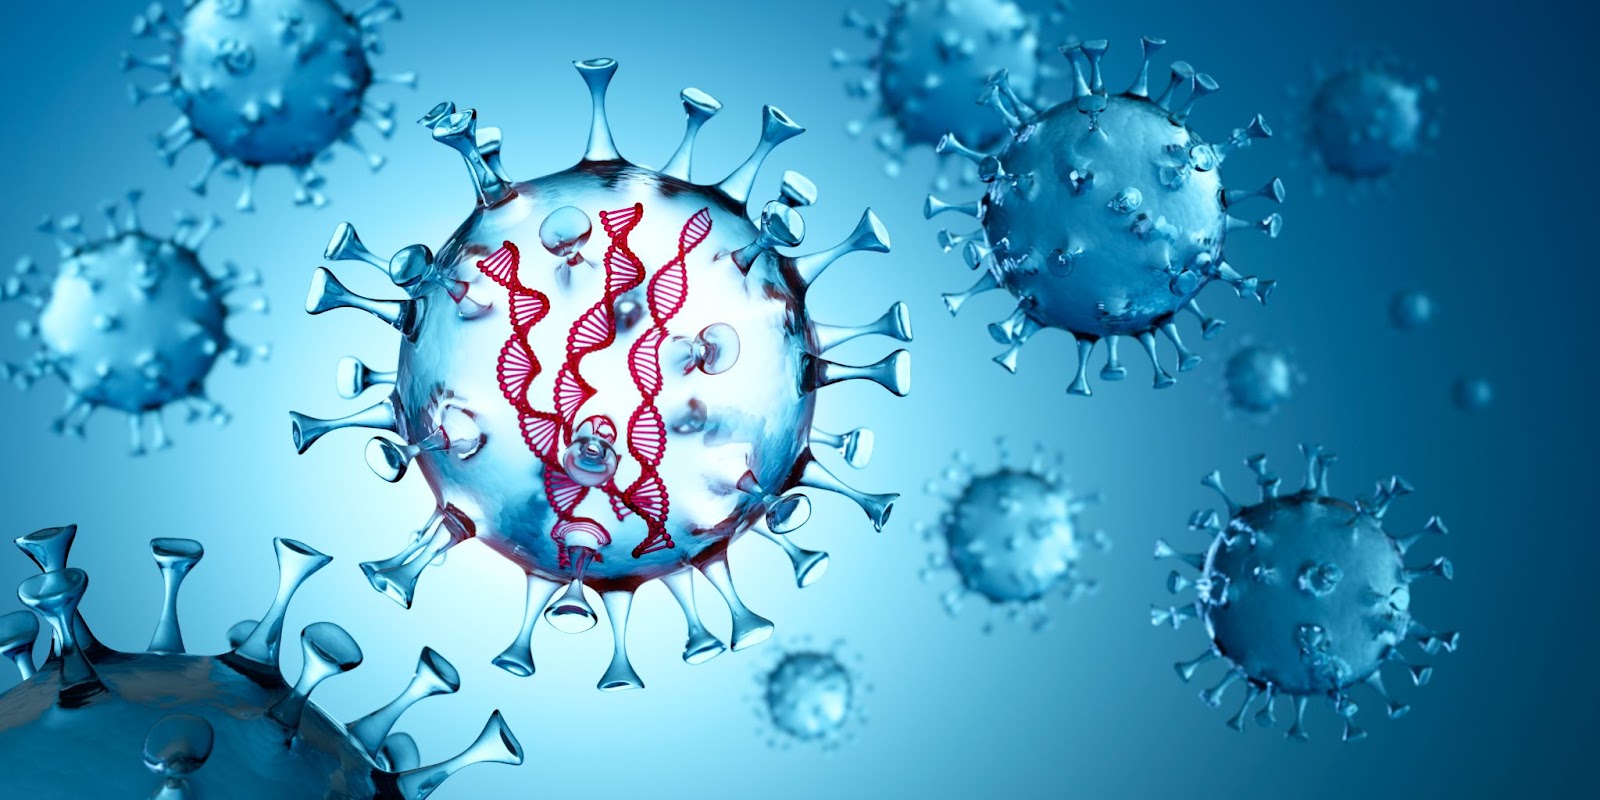 Vírus com DNA fita dupla capaz de infectar as células.